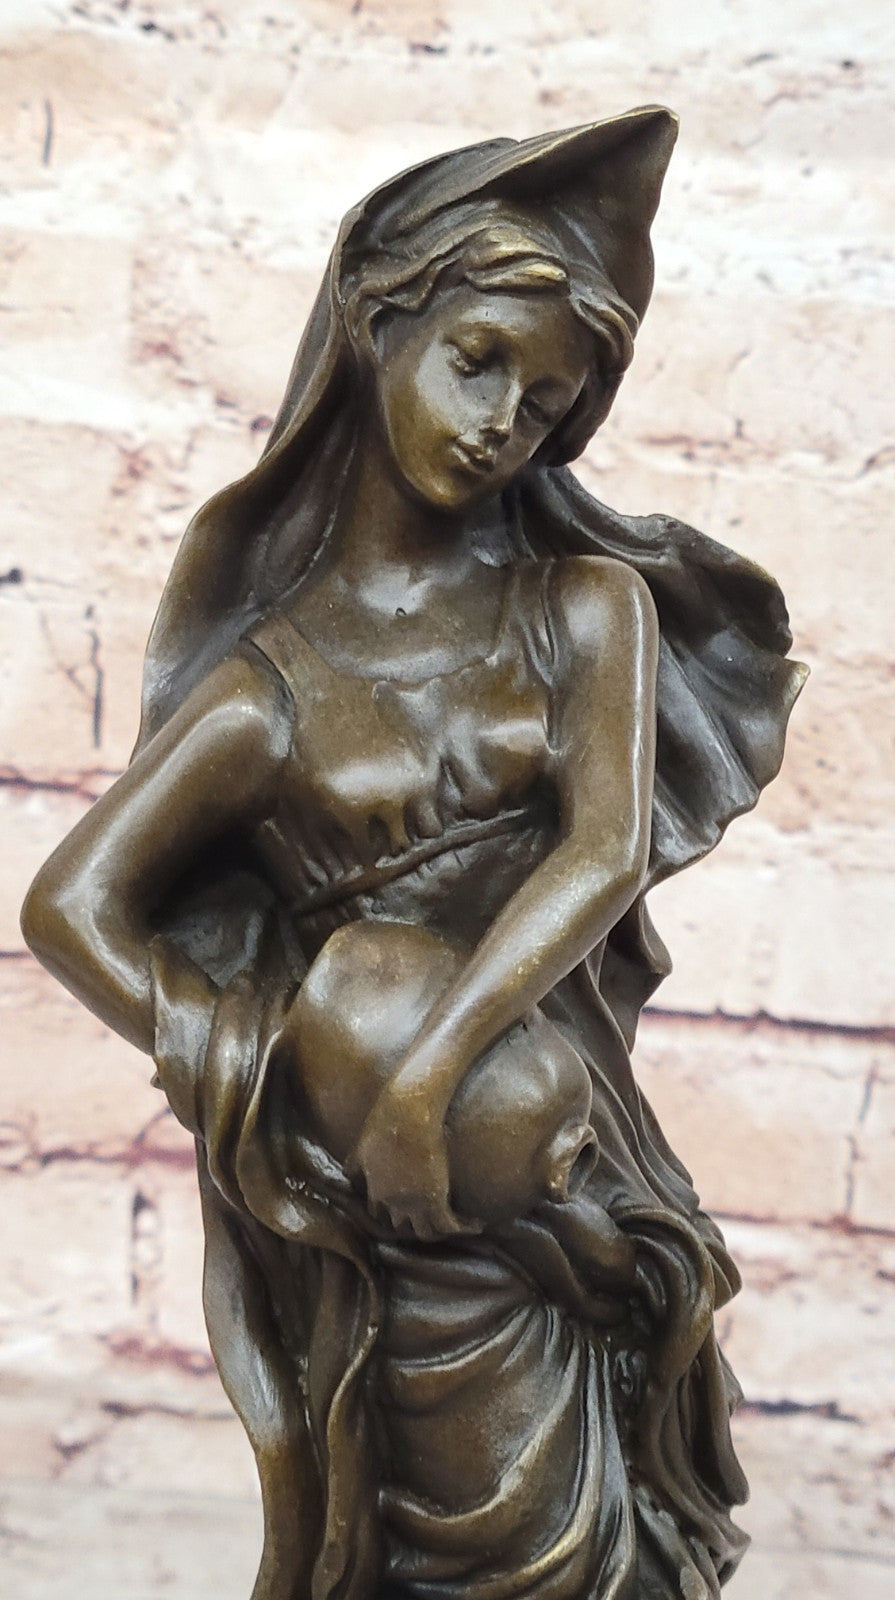 Timeless Beauty: Handmade Bronze Sculpture of a Maiden and Water Jug